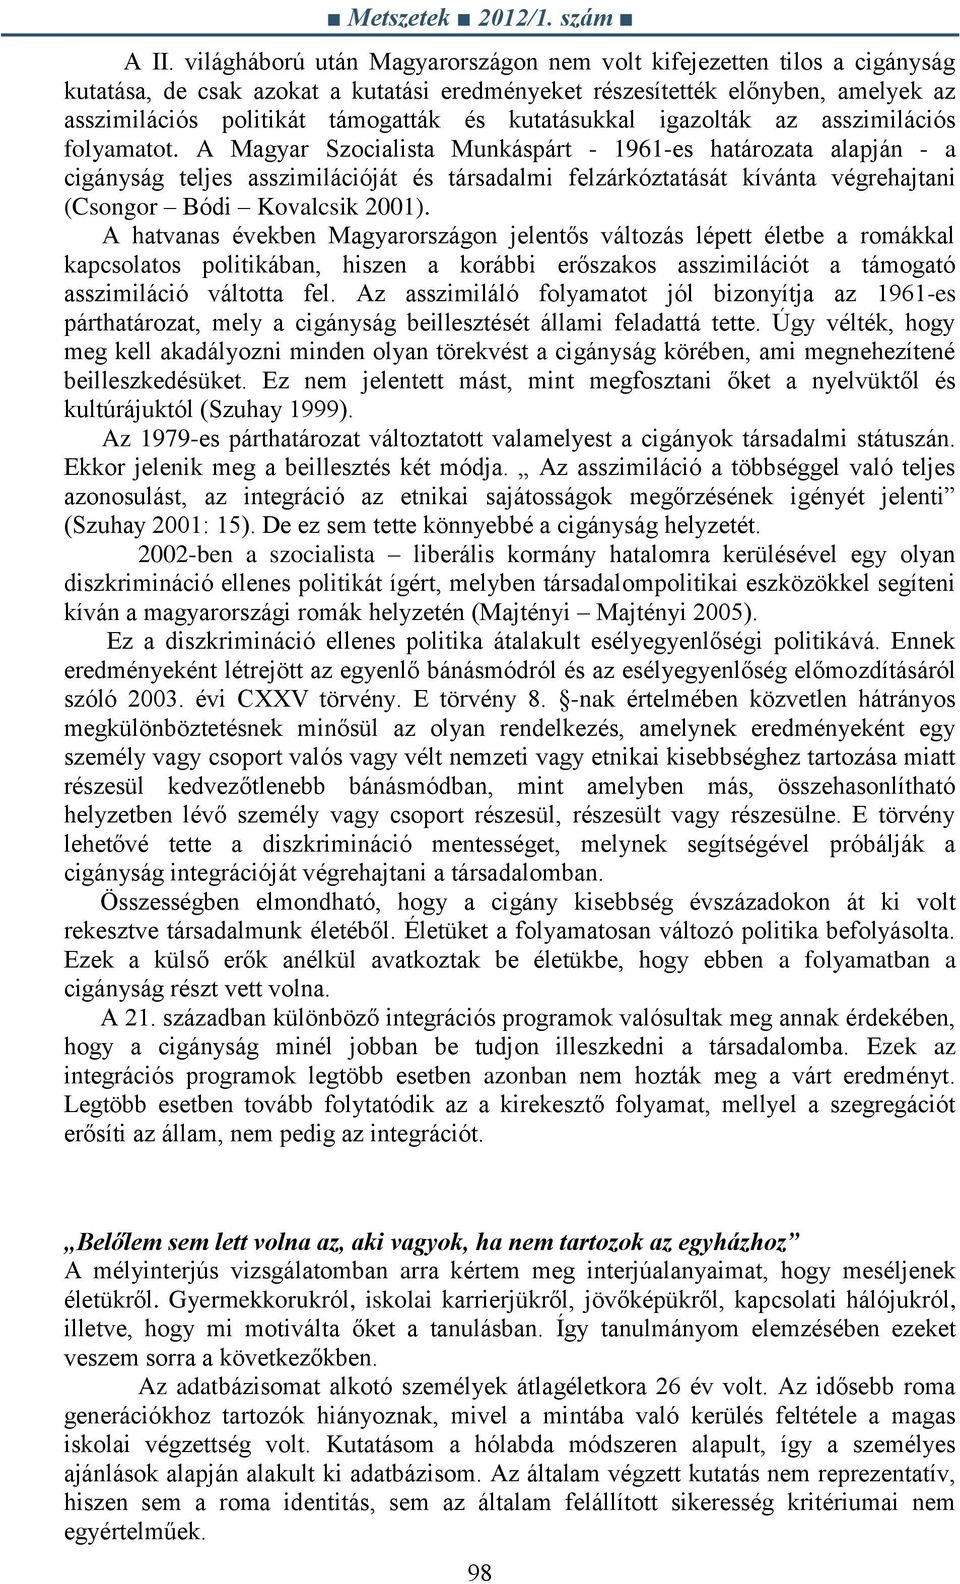 A Magyar Szocialista Munkáspárt - 1961-es határozata alapján - a cigányság teljes asszimilációját és társadalmi felzárkóztatását kívánta végrehajtani (Csongor Bódi Kovalcsik 2001).